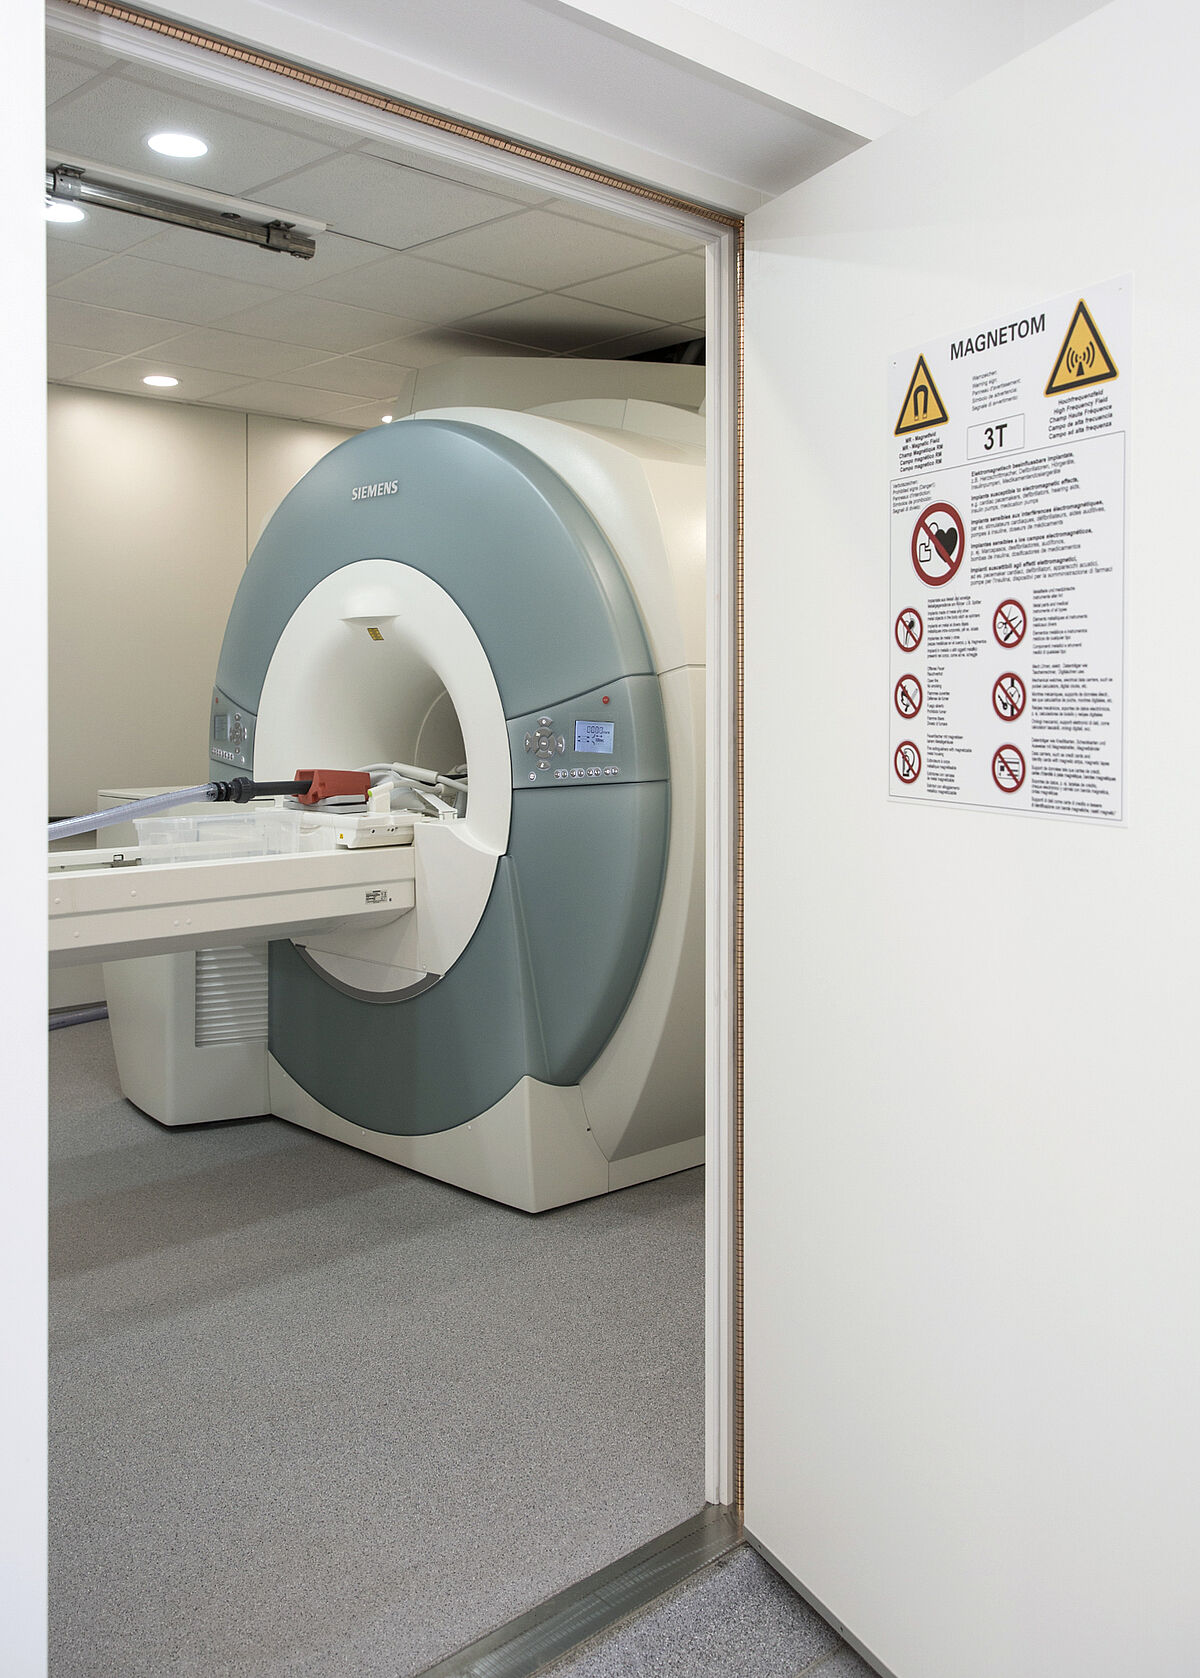 Ein Einblick in den Untersuchungsraum des MRI flow labs.